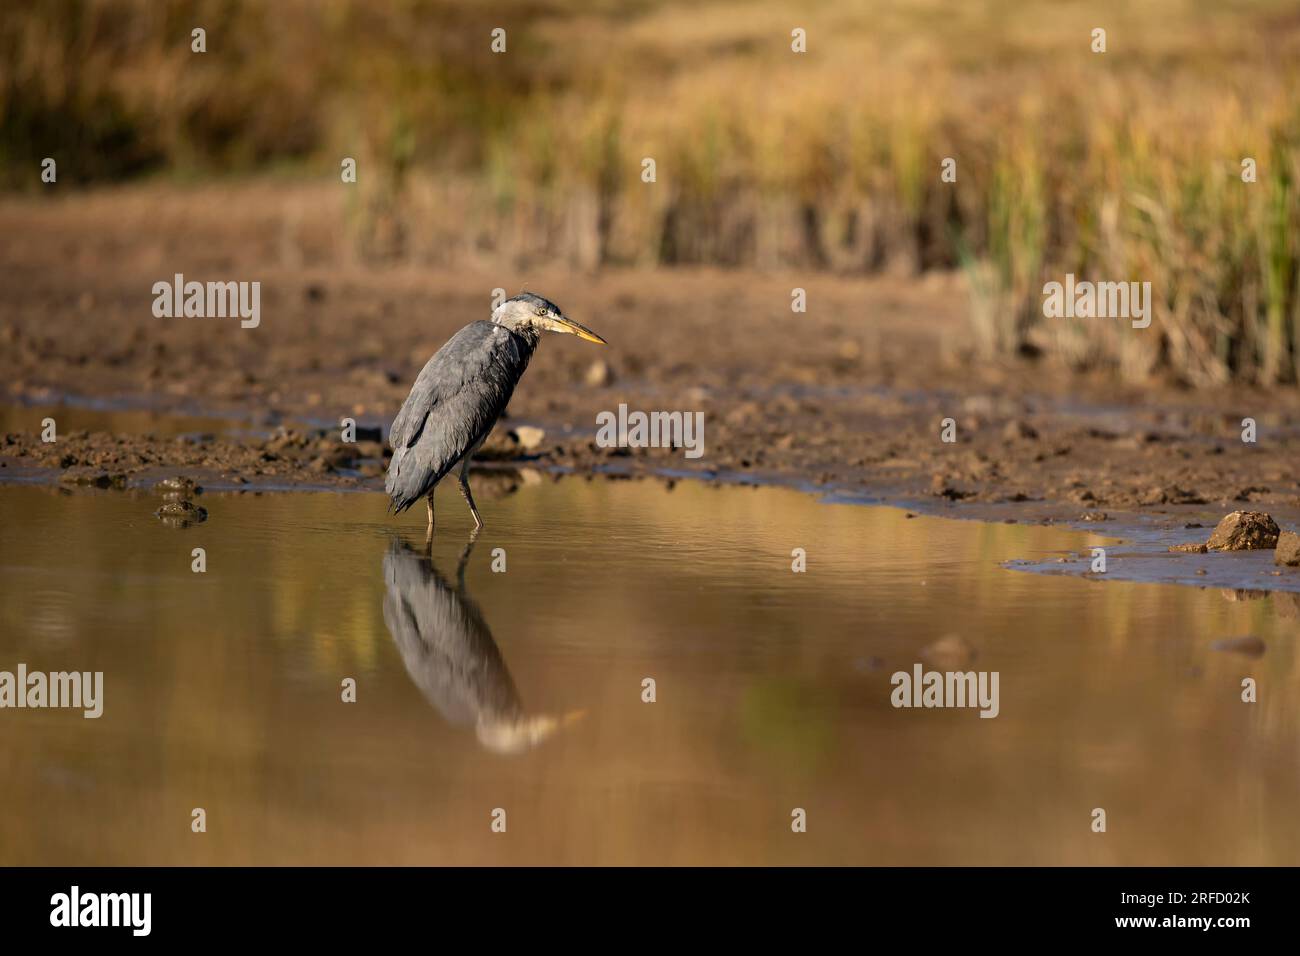 Héron gris, Ardea cinerea, oiseau miroir dans l'étang, ensoleillé vers le soir, république tchèque Banque D'Images